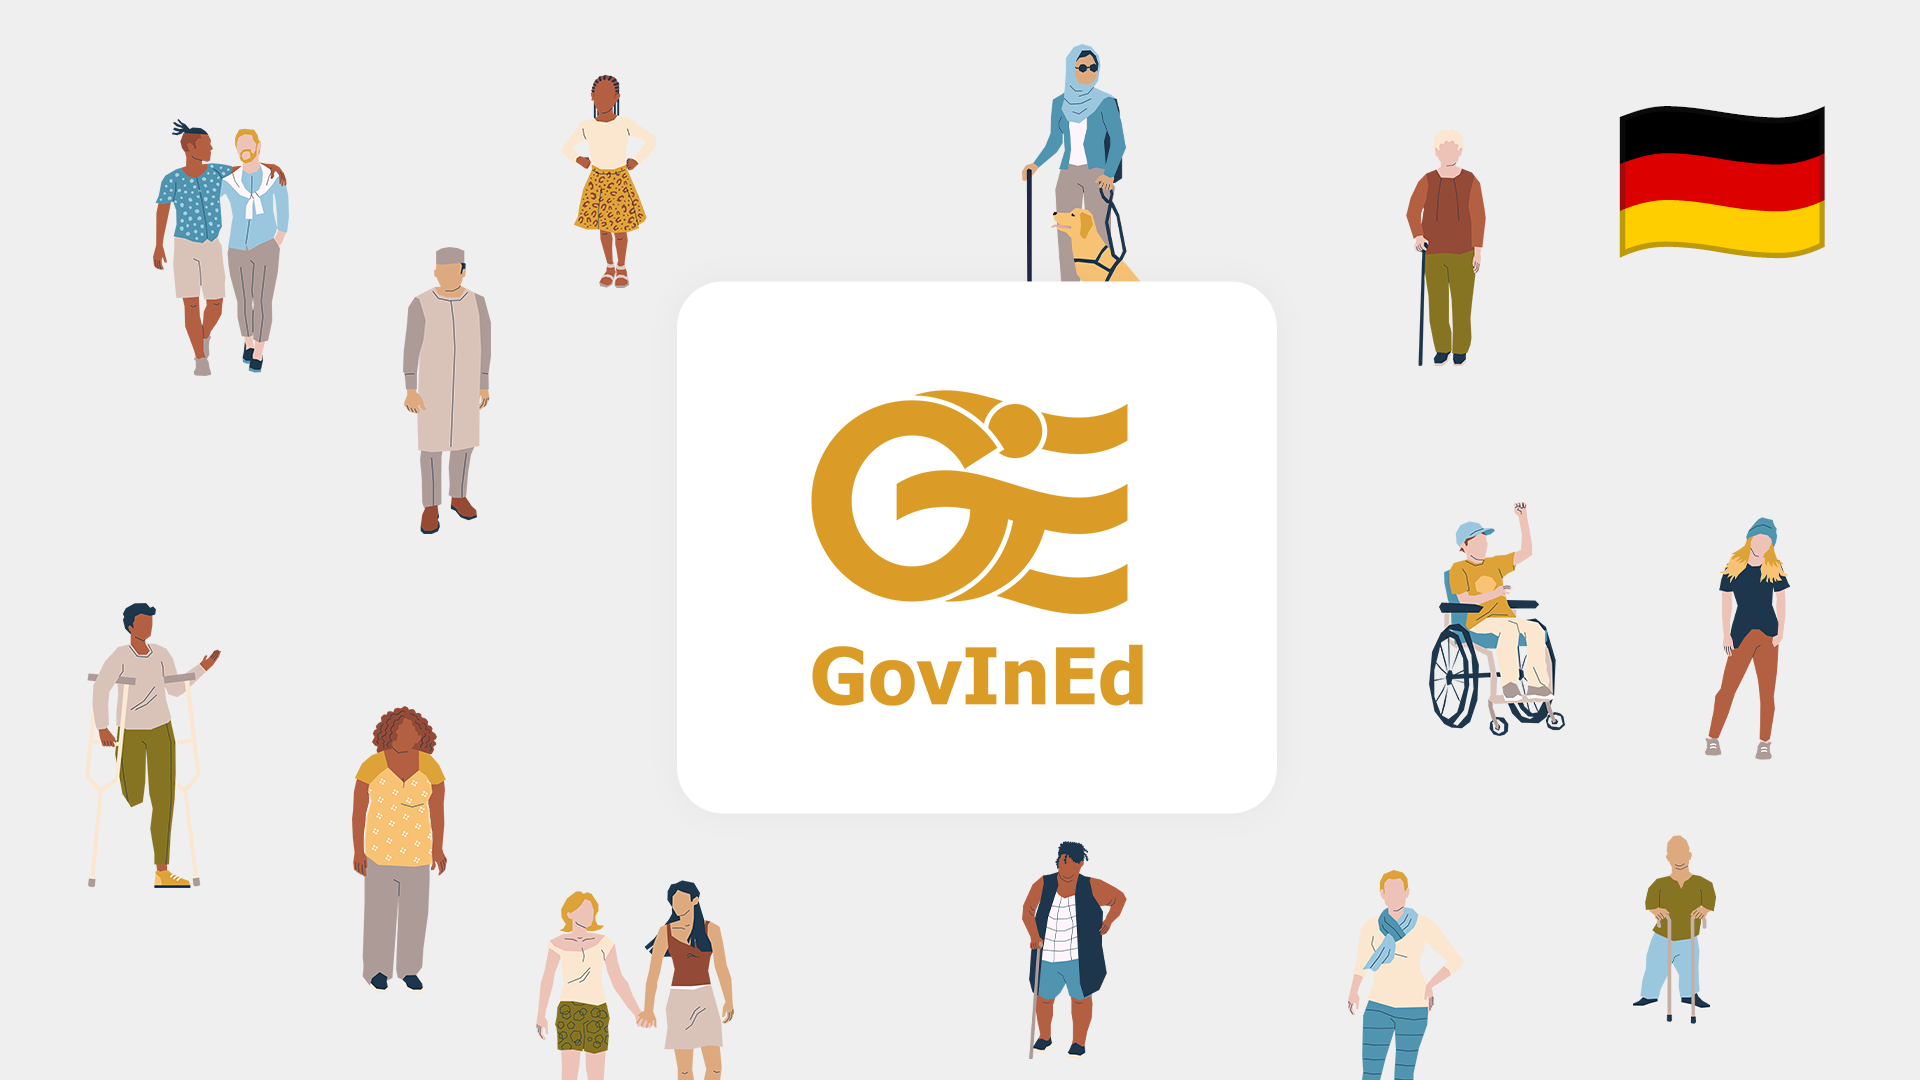 Eine Illustration mit dem Titel „GovInEd“ zeigt verschiedene Personen rund um das Logo. Eine deutsche Flagge in der oberen rechten Ecke symbolisiert, dass dies die deutsche Version des Kurses ist